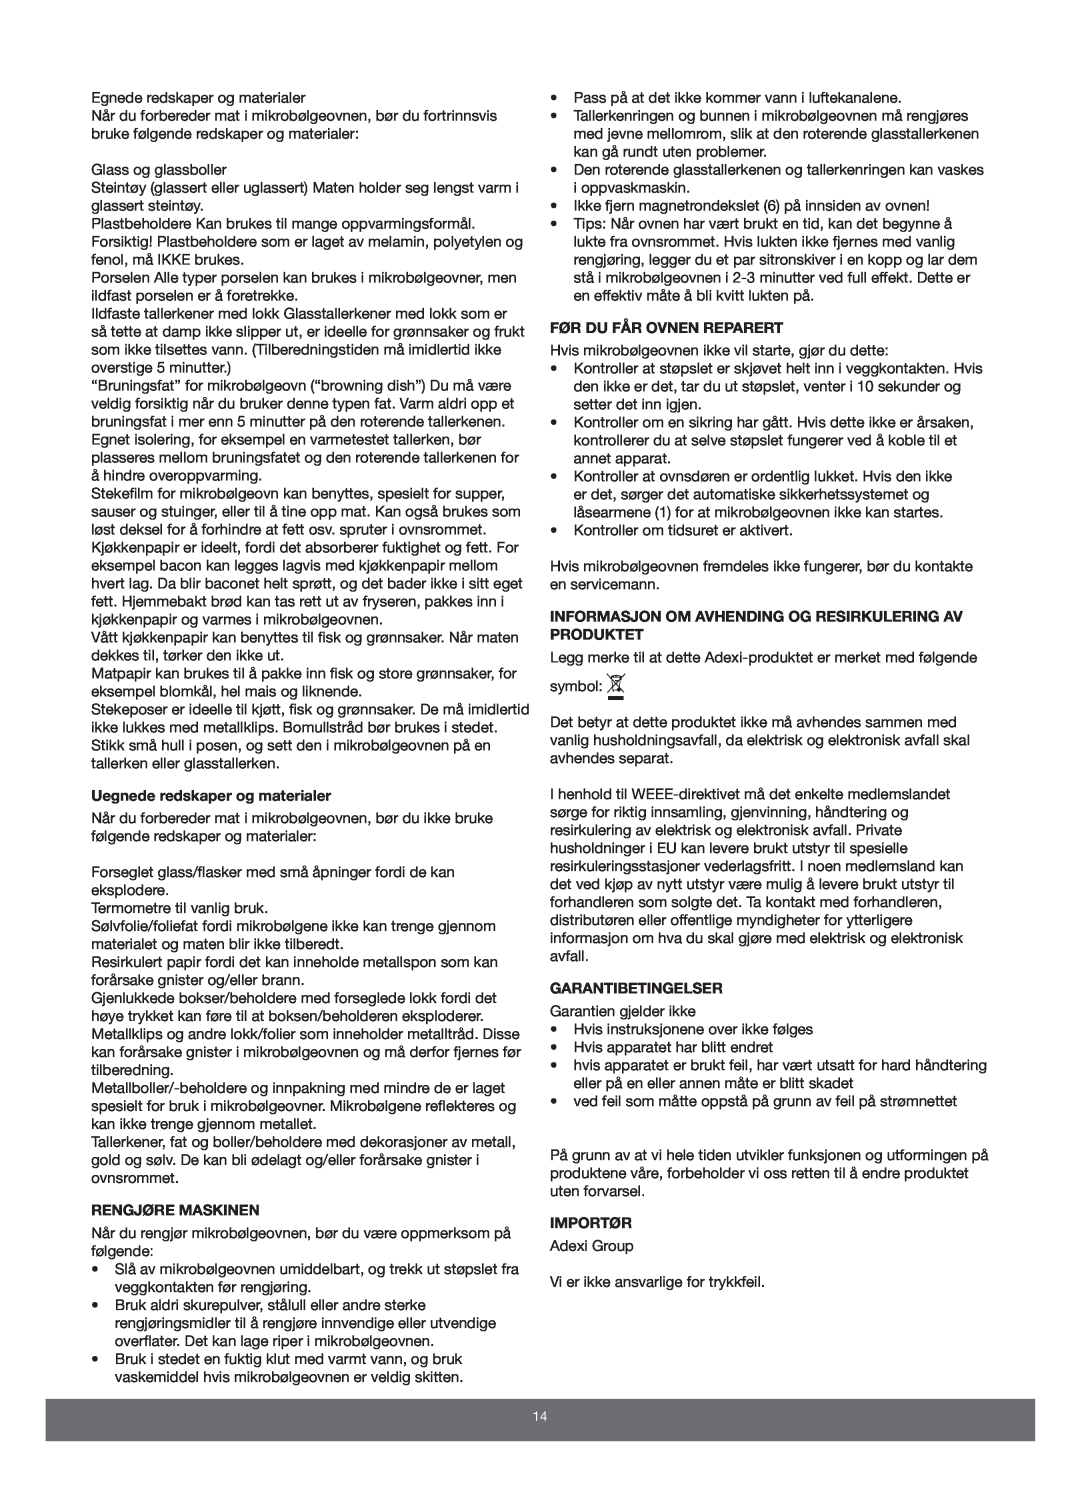 Melissa 653-089 manual Uegnede redskaper og materialer, Rengjøre Maskinen, Før Du Får Ovnen Reparert, Garantibetingelser 